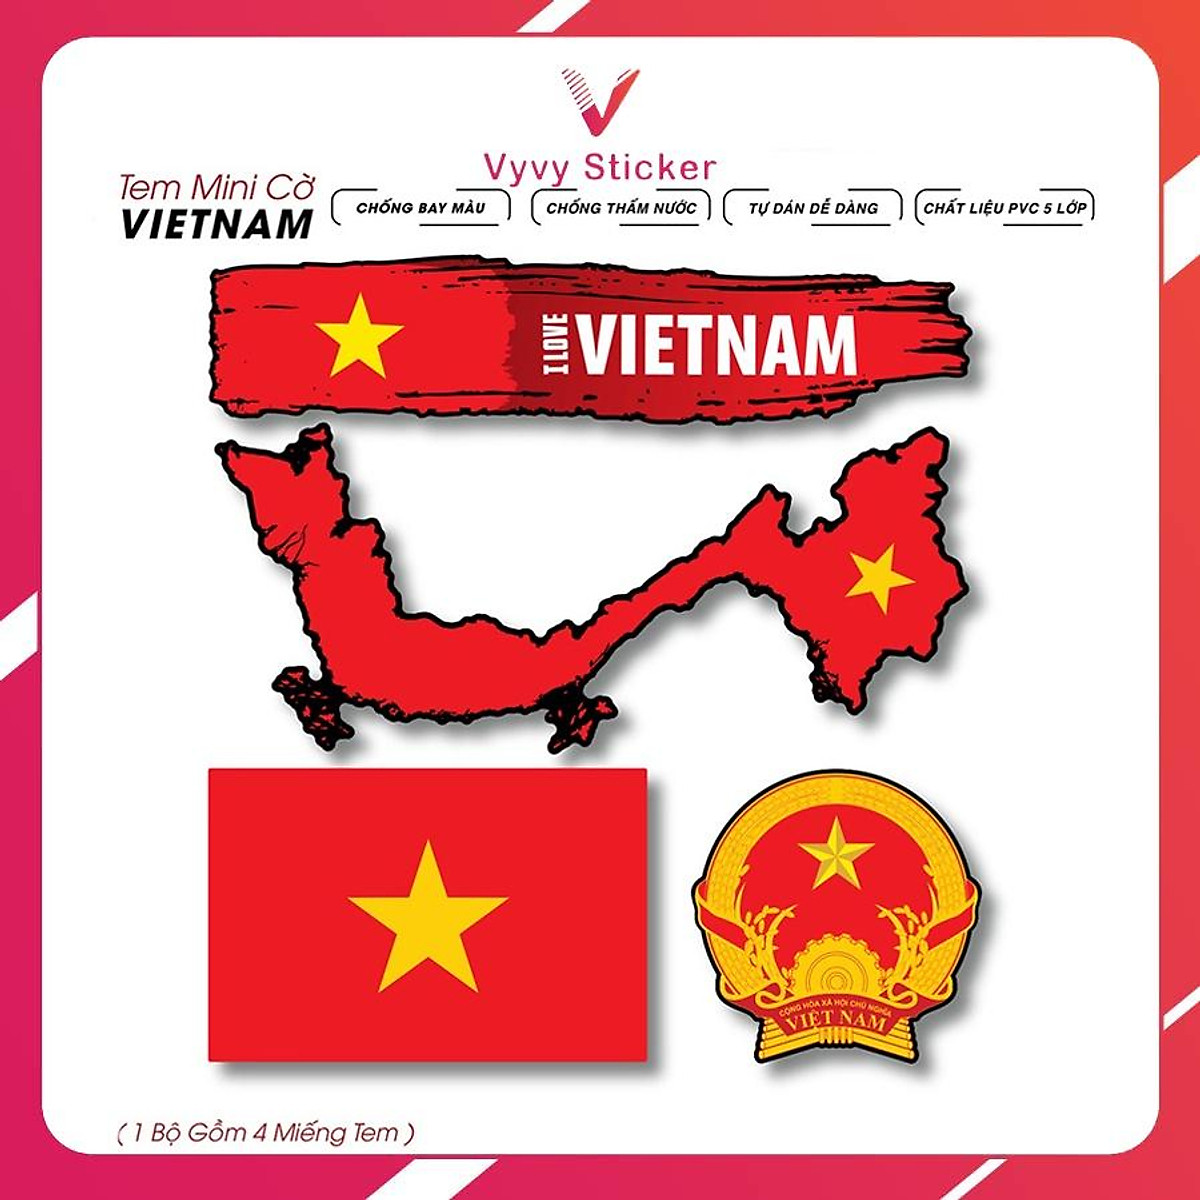 Sticker dán xe Việt Nam, Cờ Đảng dán xe máy: Bạn là người yêu thích và tự hào về đất nước Việt Nam? Hãy cùng xem hình ảnh về sticker dán xe Việt Nam và cờ Đảng dán xe máy, sản phẩm độc đáo và sẽ giúp bạn thể hiện tình yêu quê hương của mình một cách rõ nét.